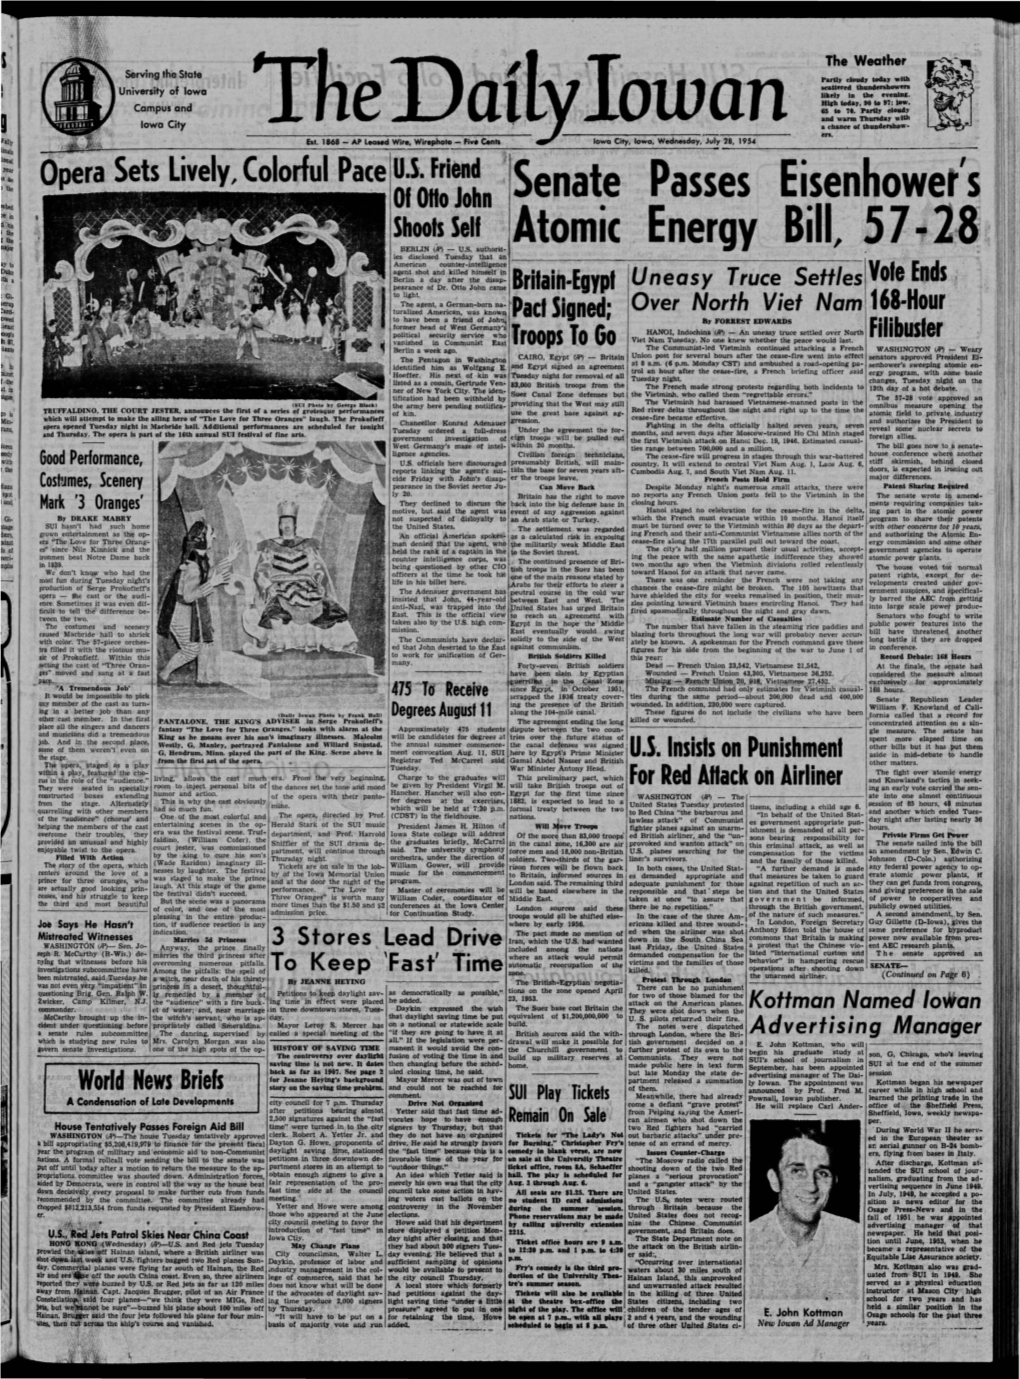 Daily Iowan (Iowa City, Iowa), 1954-07-28